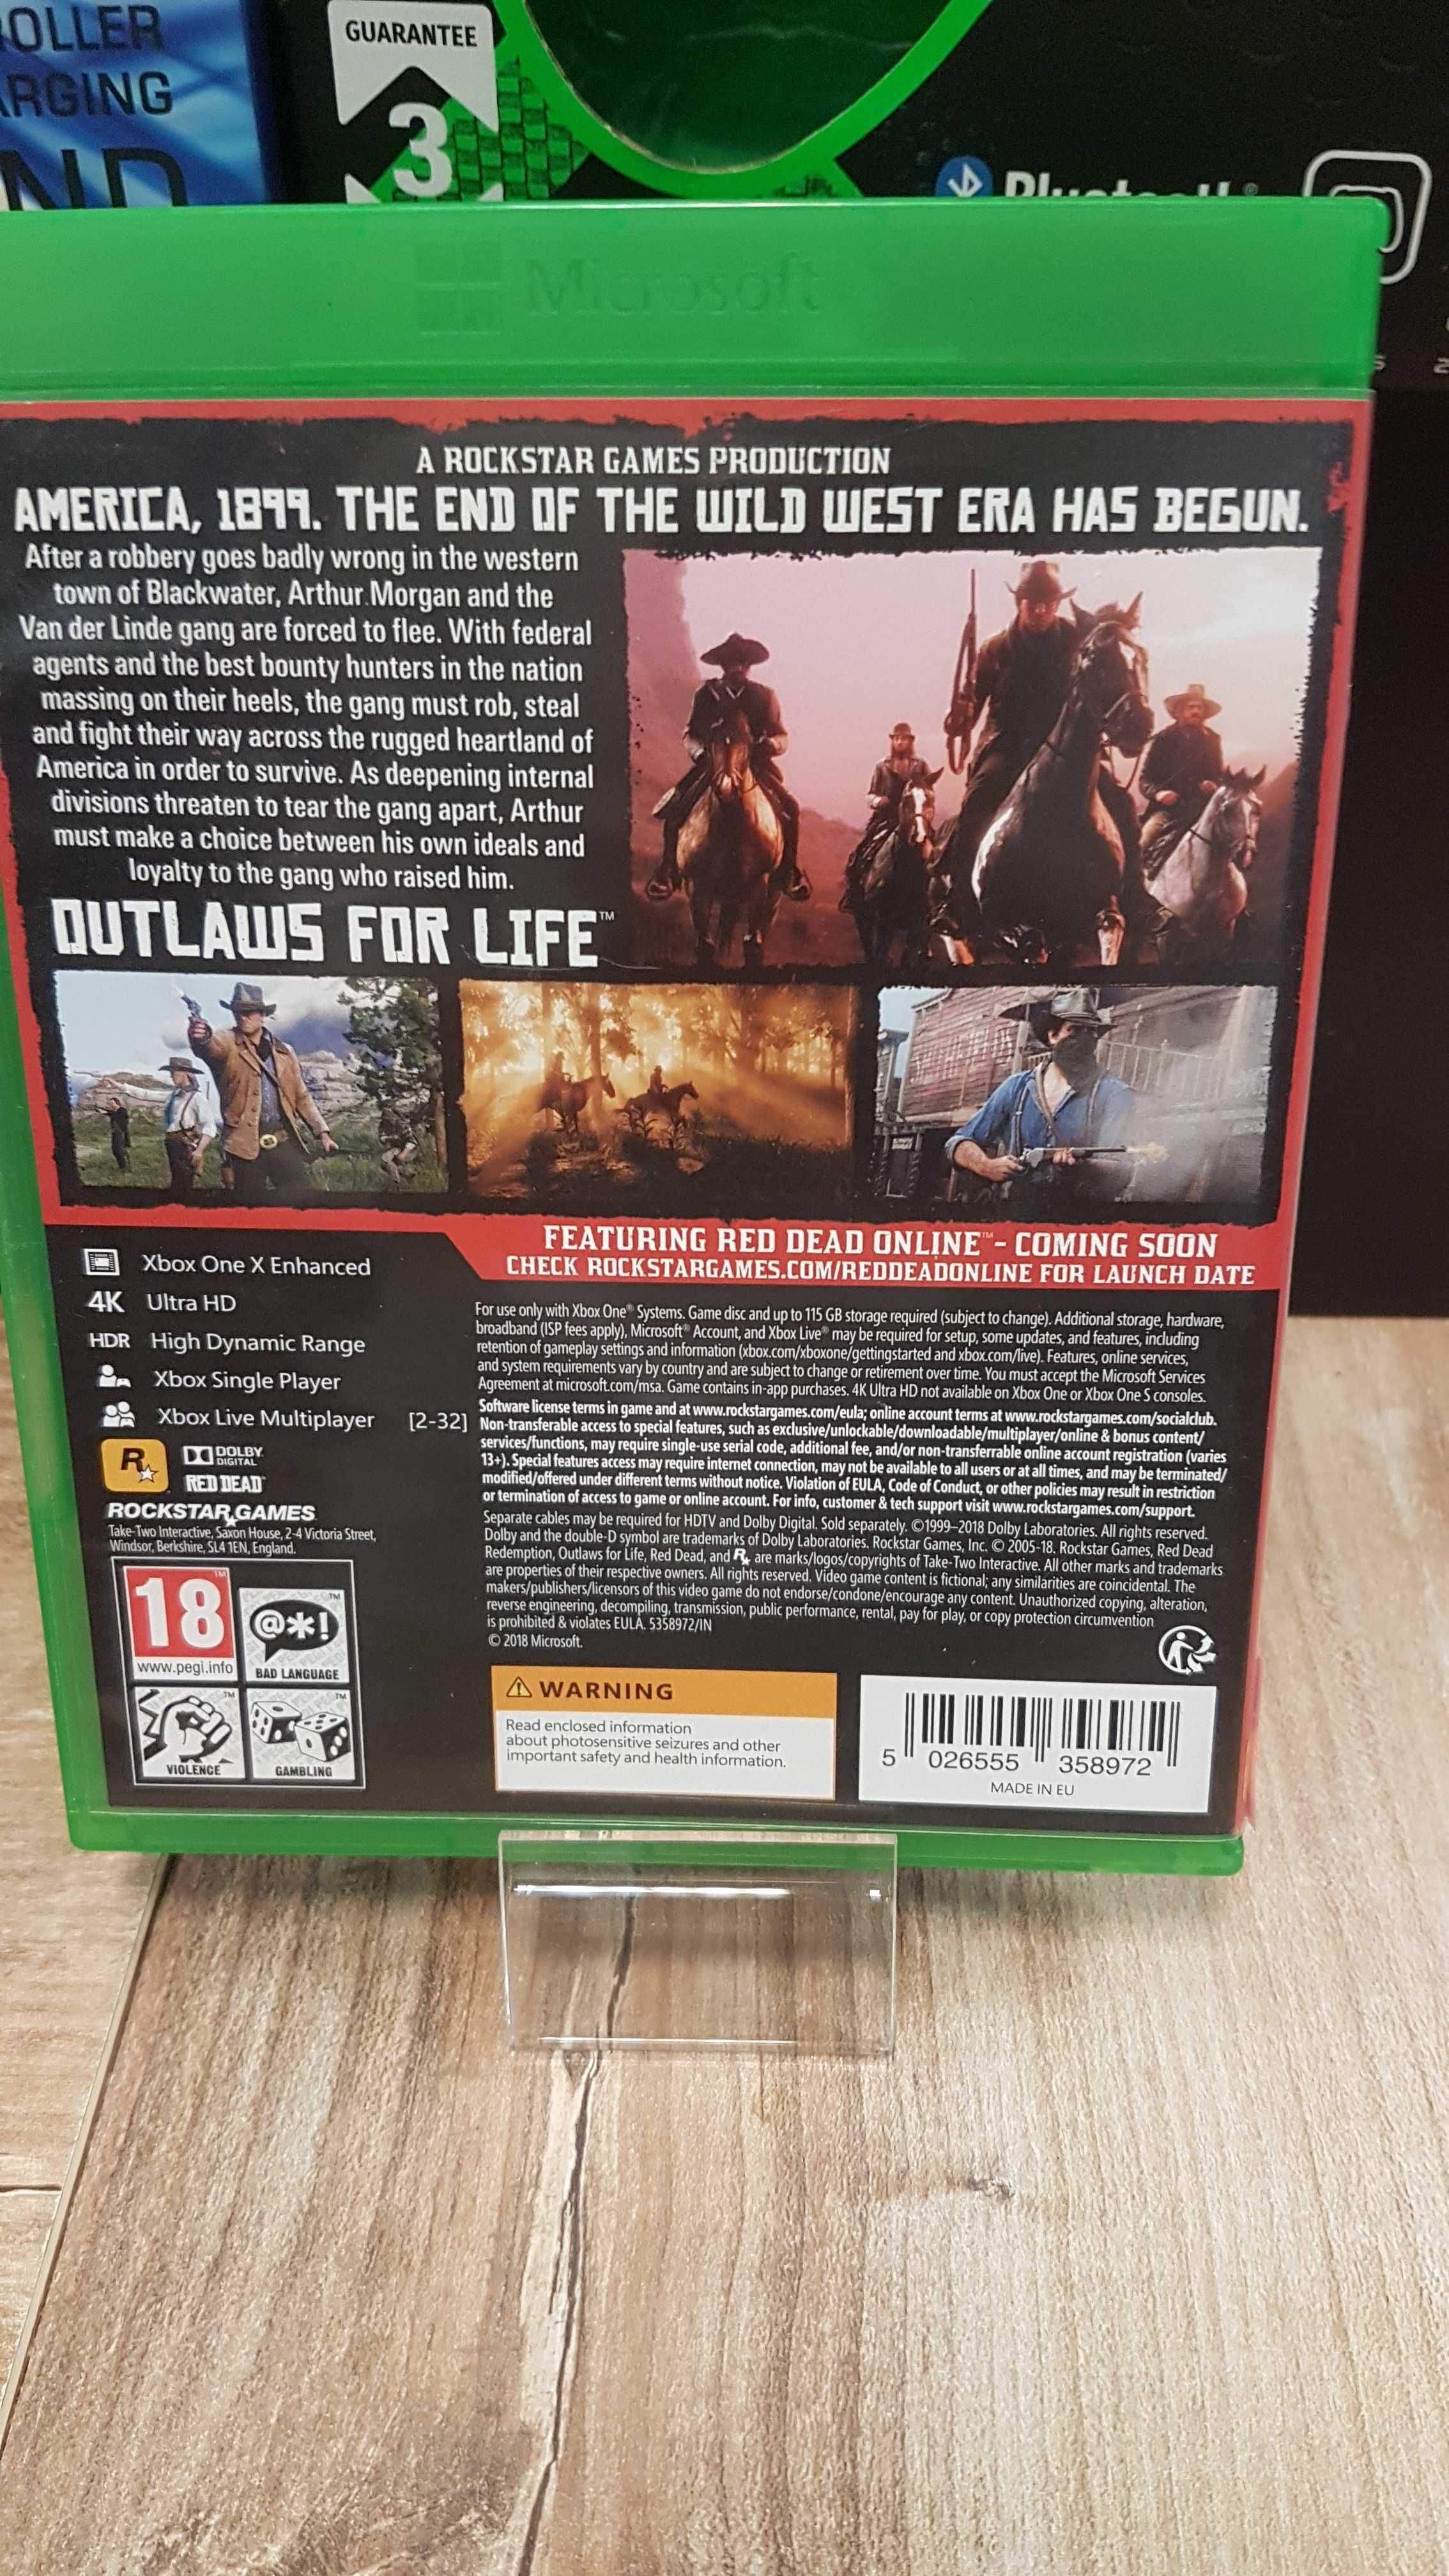 Red Dead Redemption 2 XBOX ONE Sklep Wysyłka Wymiana